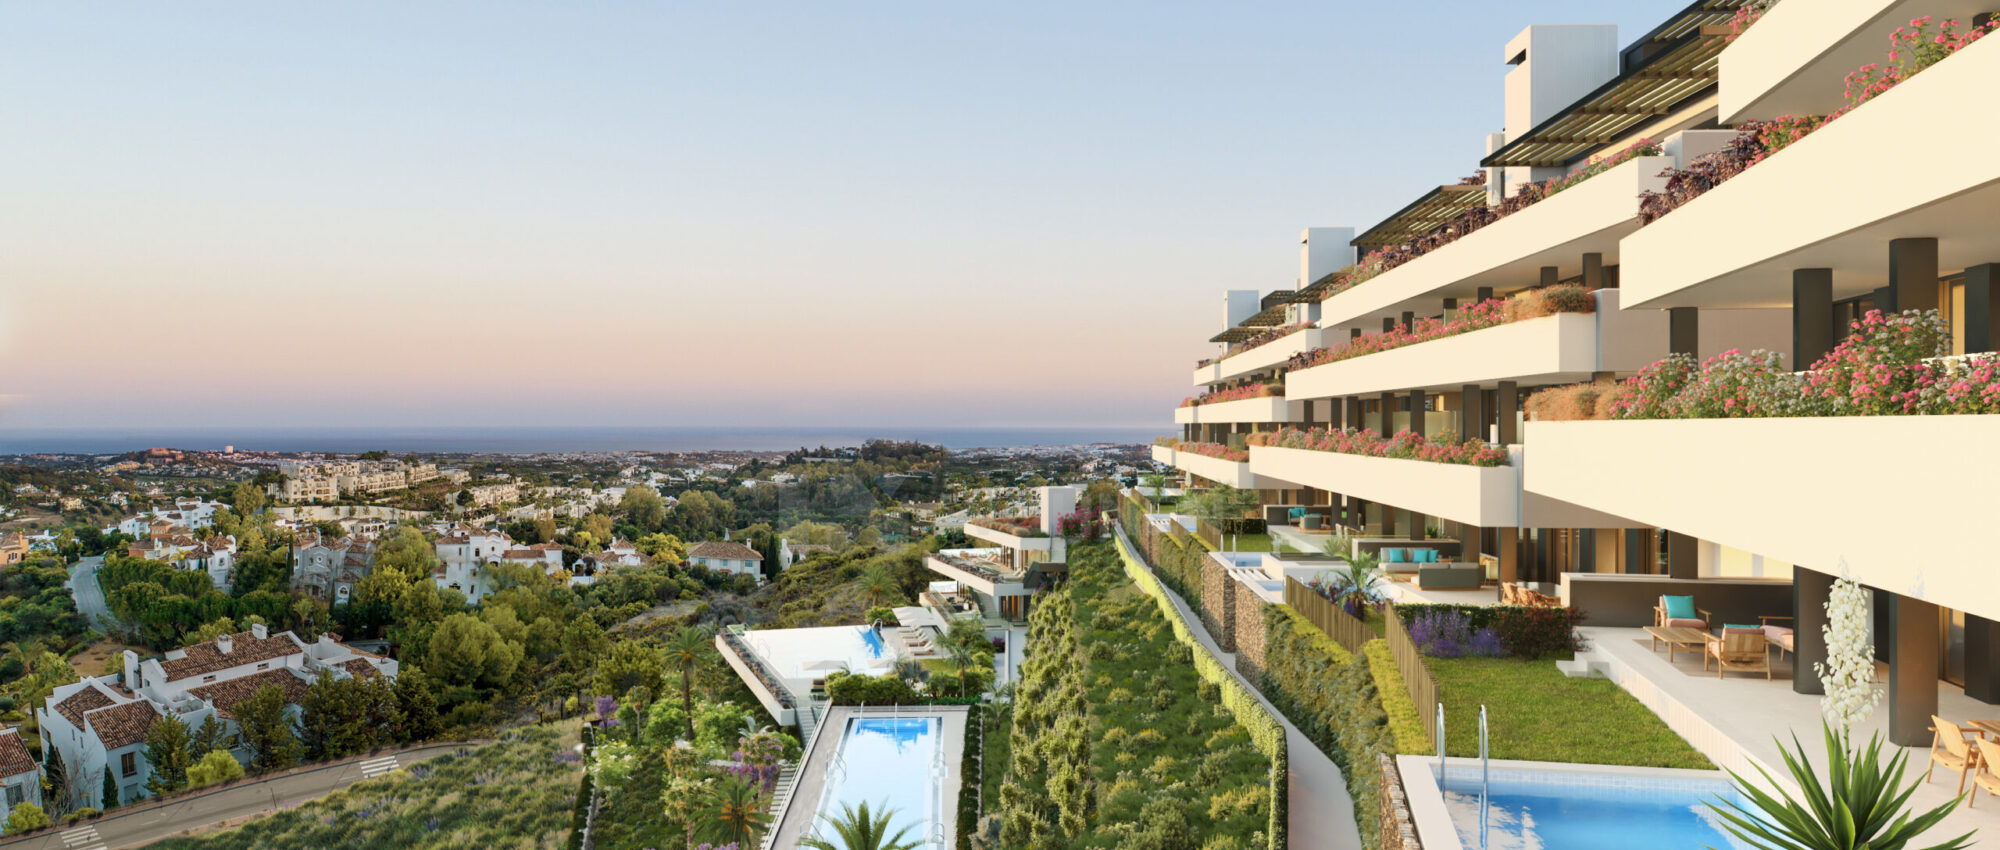 Proyecto de apartamentos a estrenar con vistas panorámicas al mar en Marbella